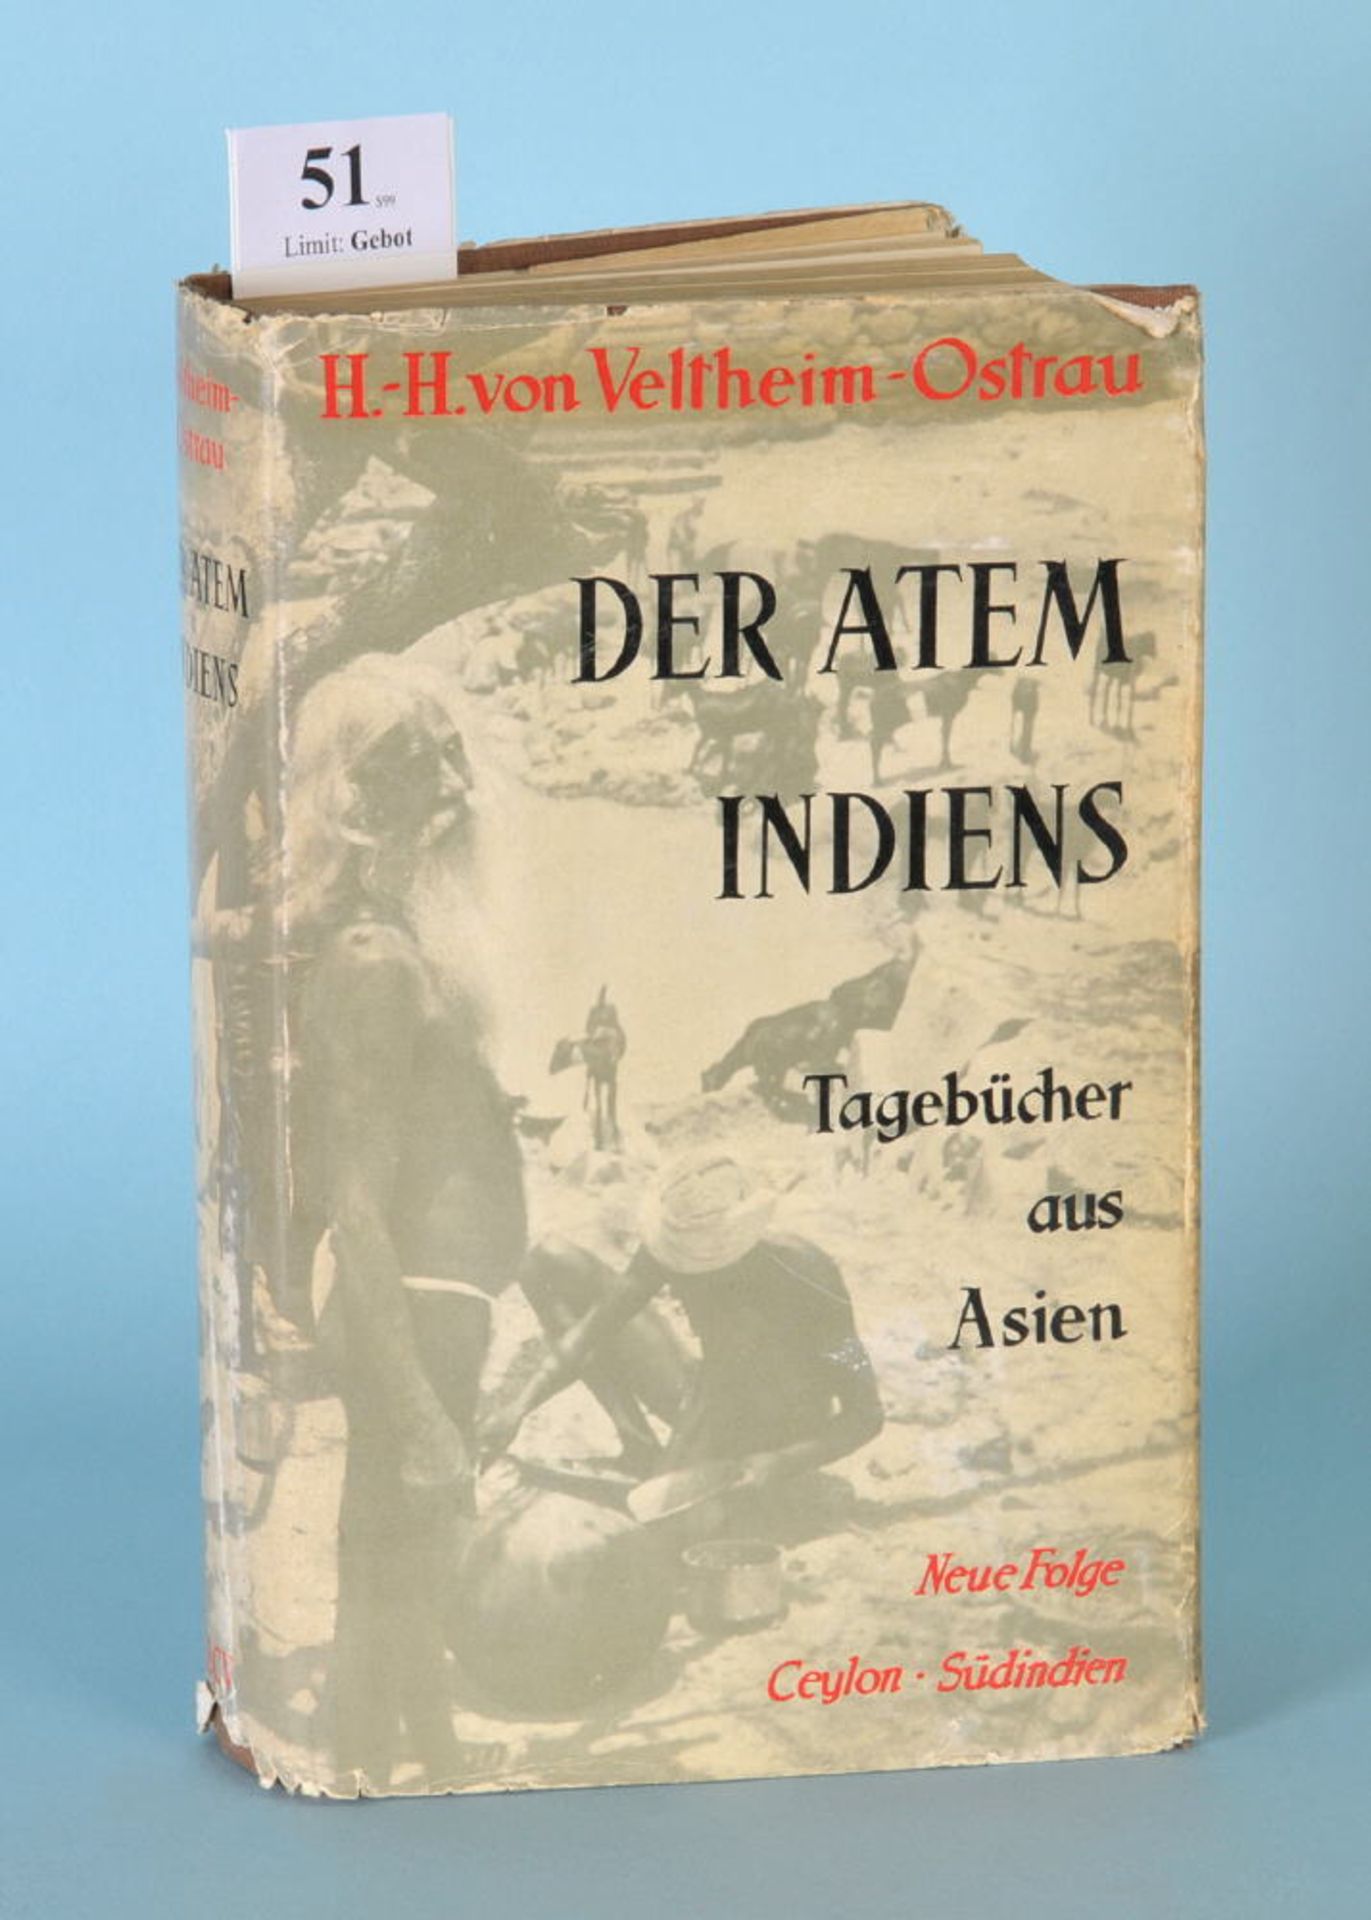 Veltheim-Ostrau, Hans-Hasso von "Der Atem Indiens -...""...Tagebücher aus Asien. Neue Folge: